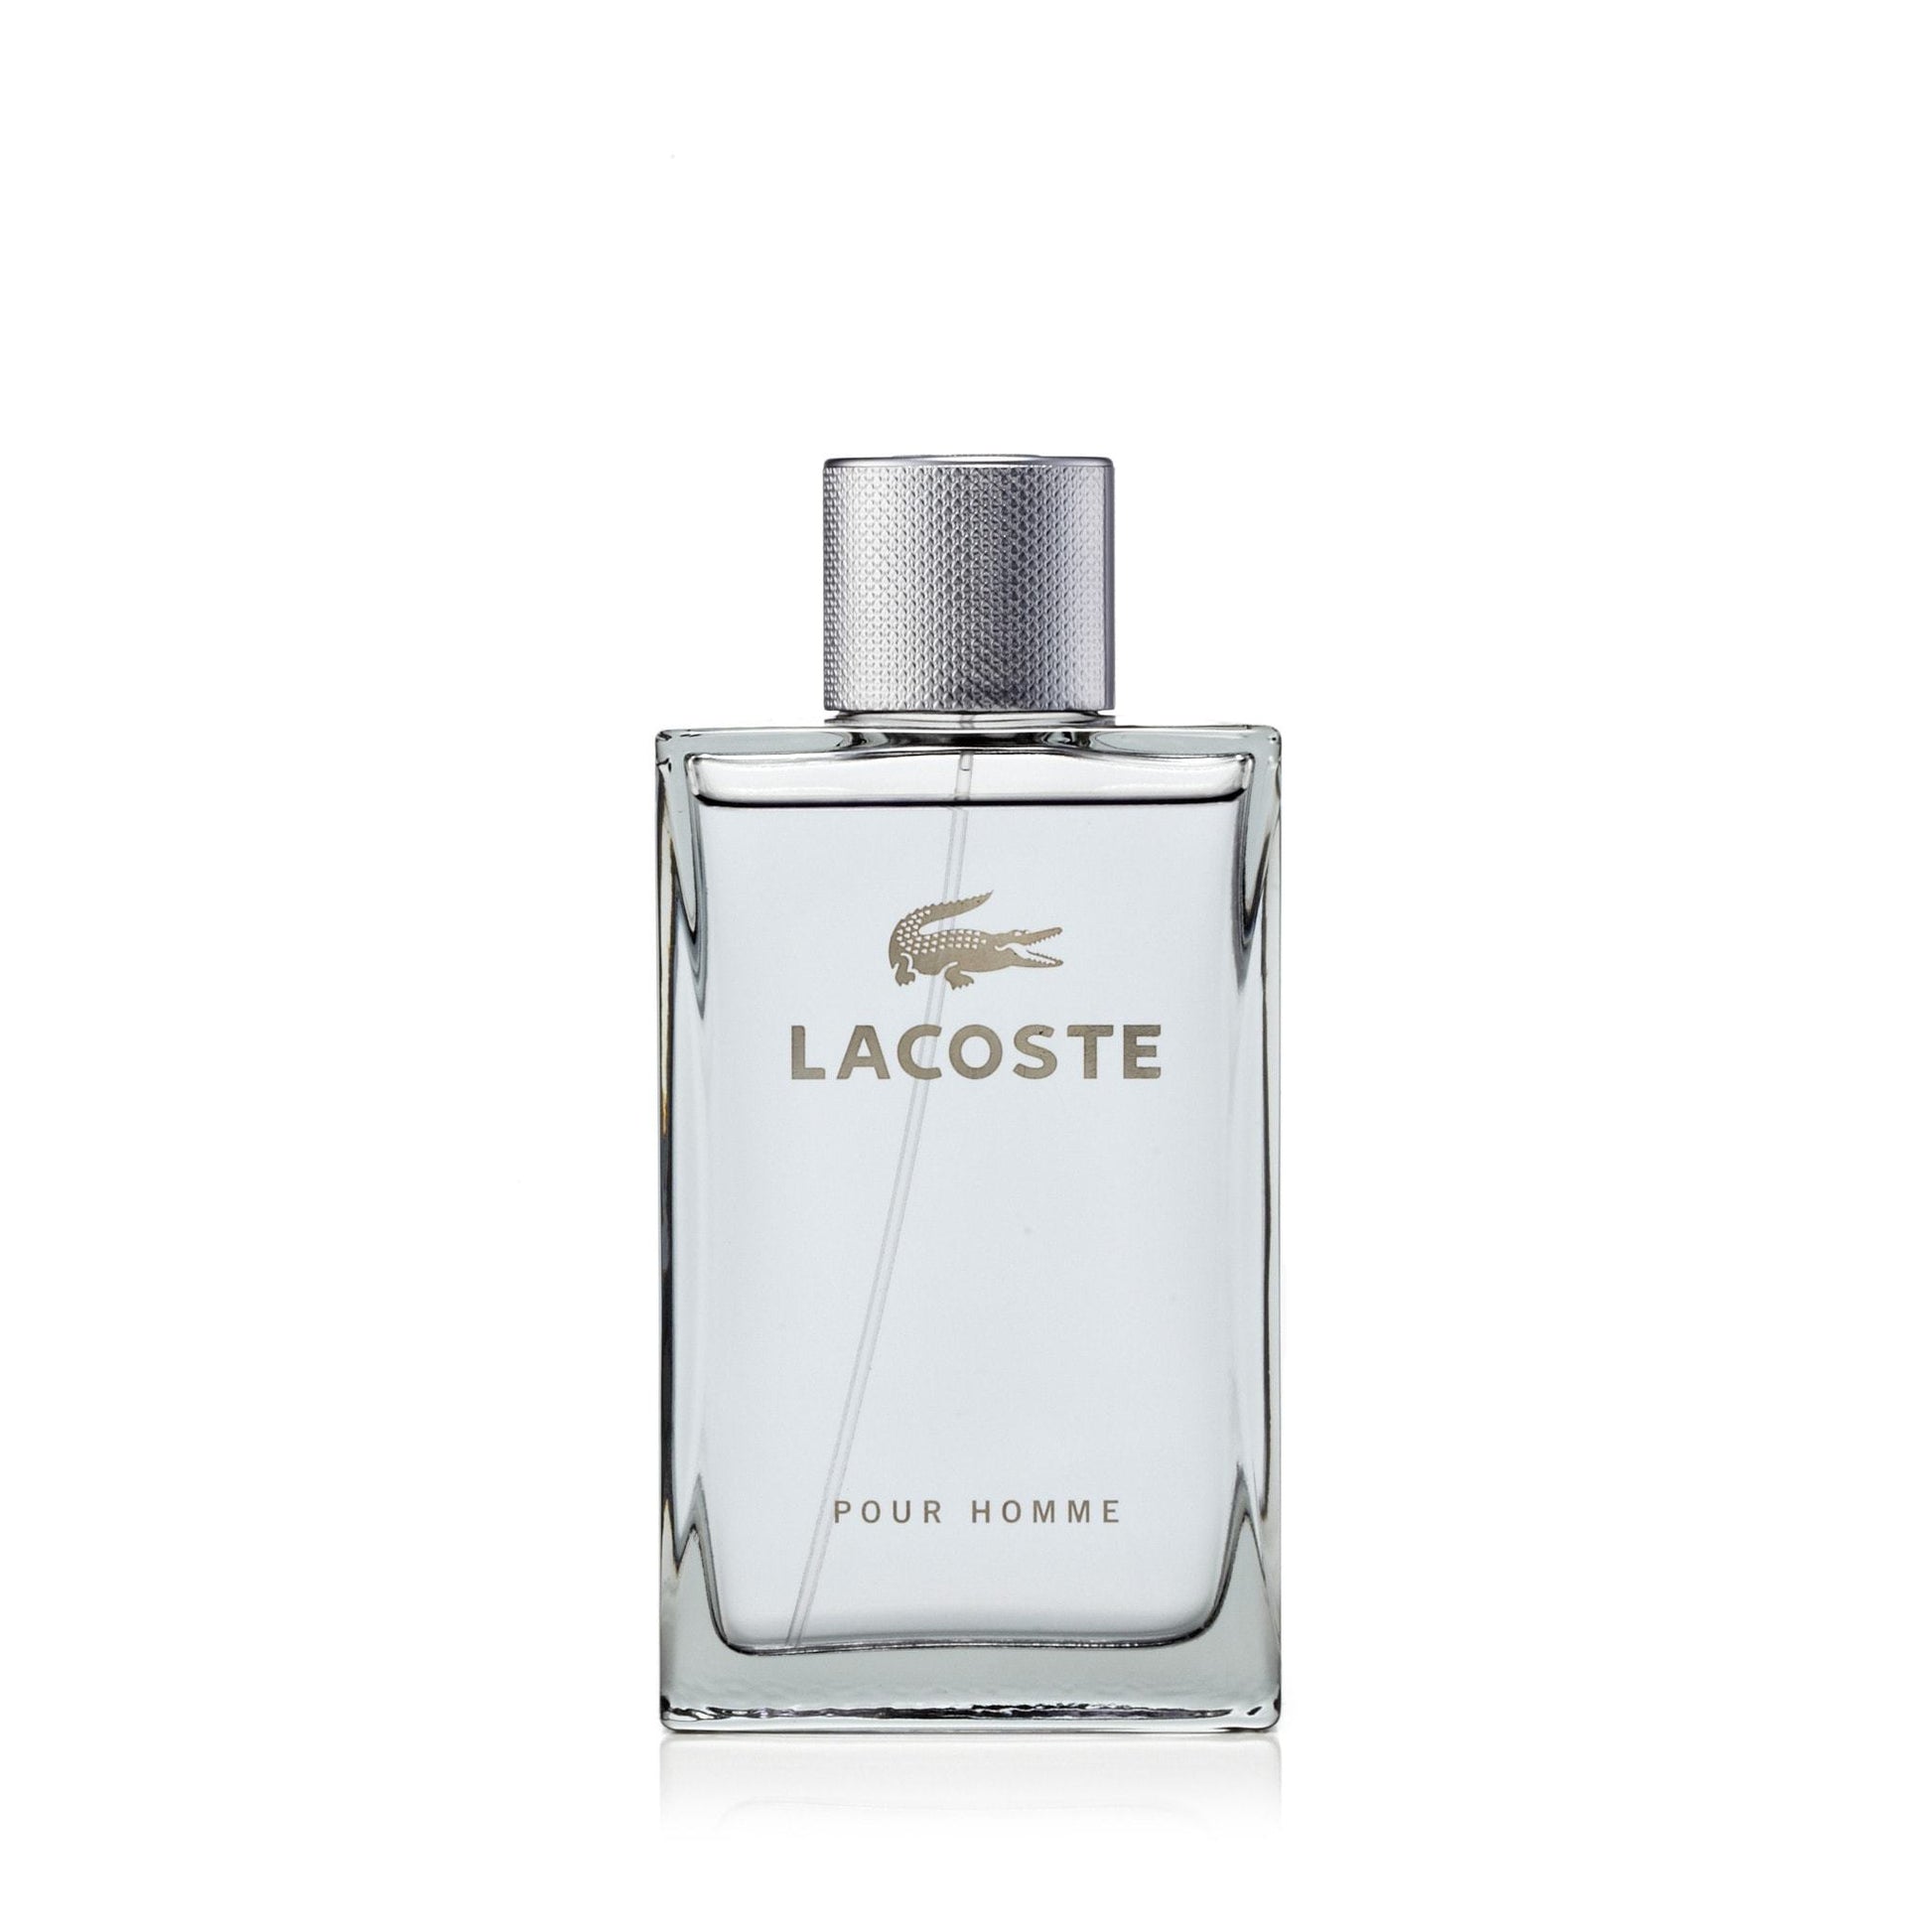 Lacoste Pour Homme Eau de Toilette Spray for Men by Lacoste, Product image 1